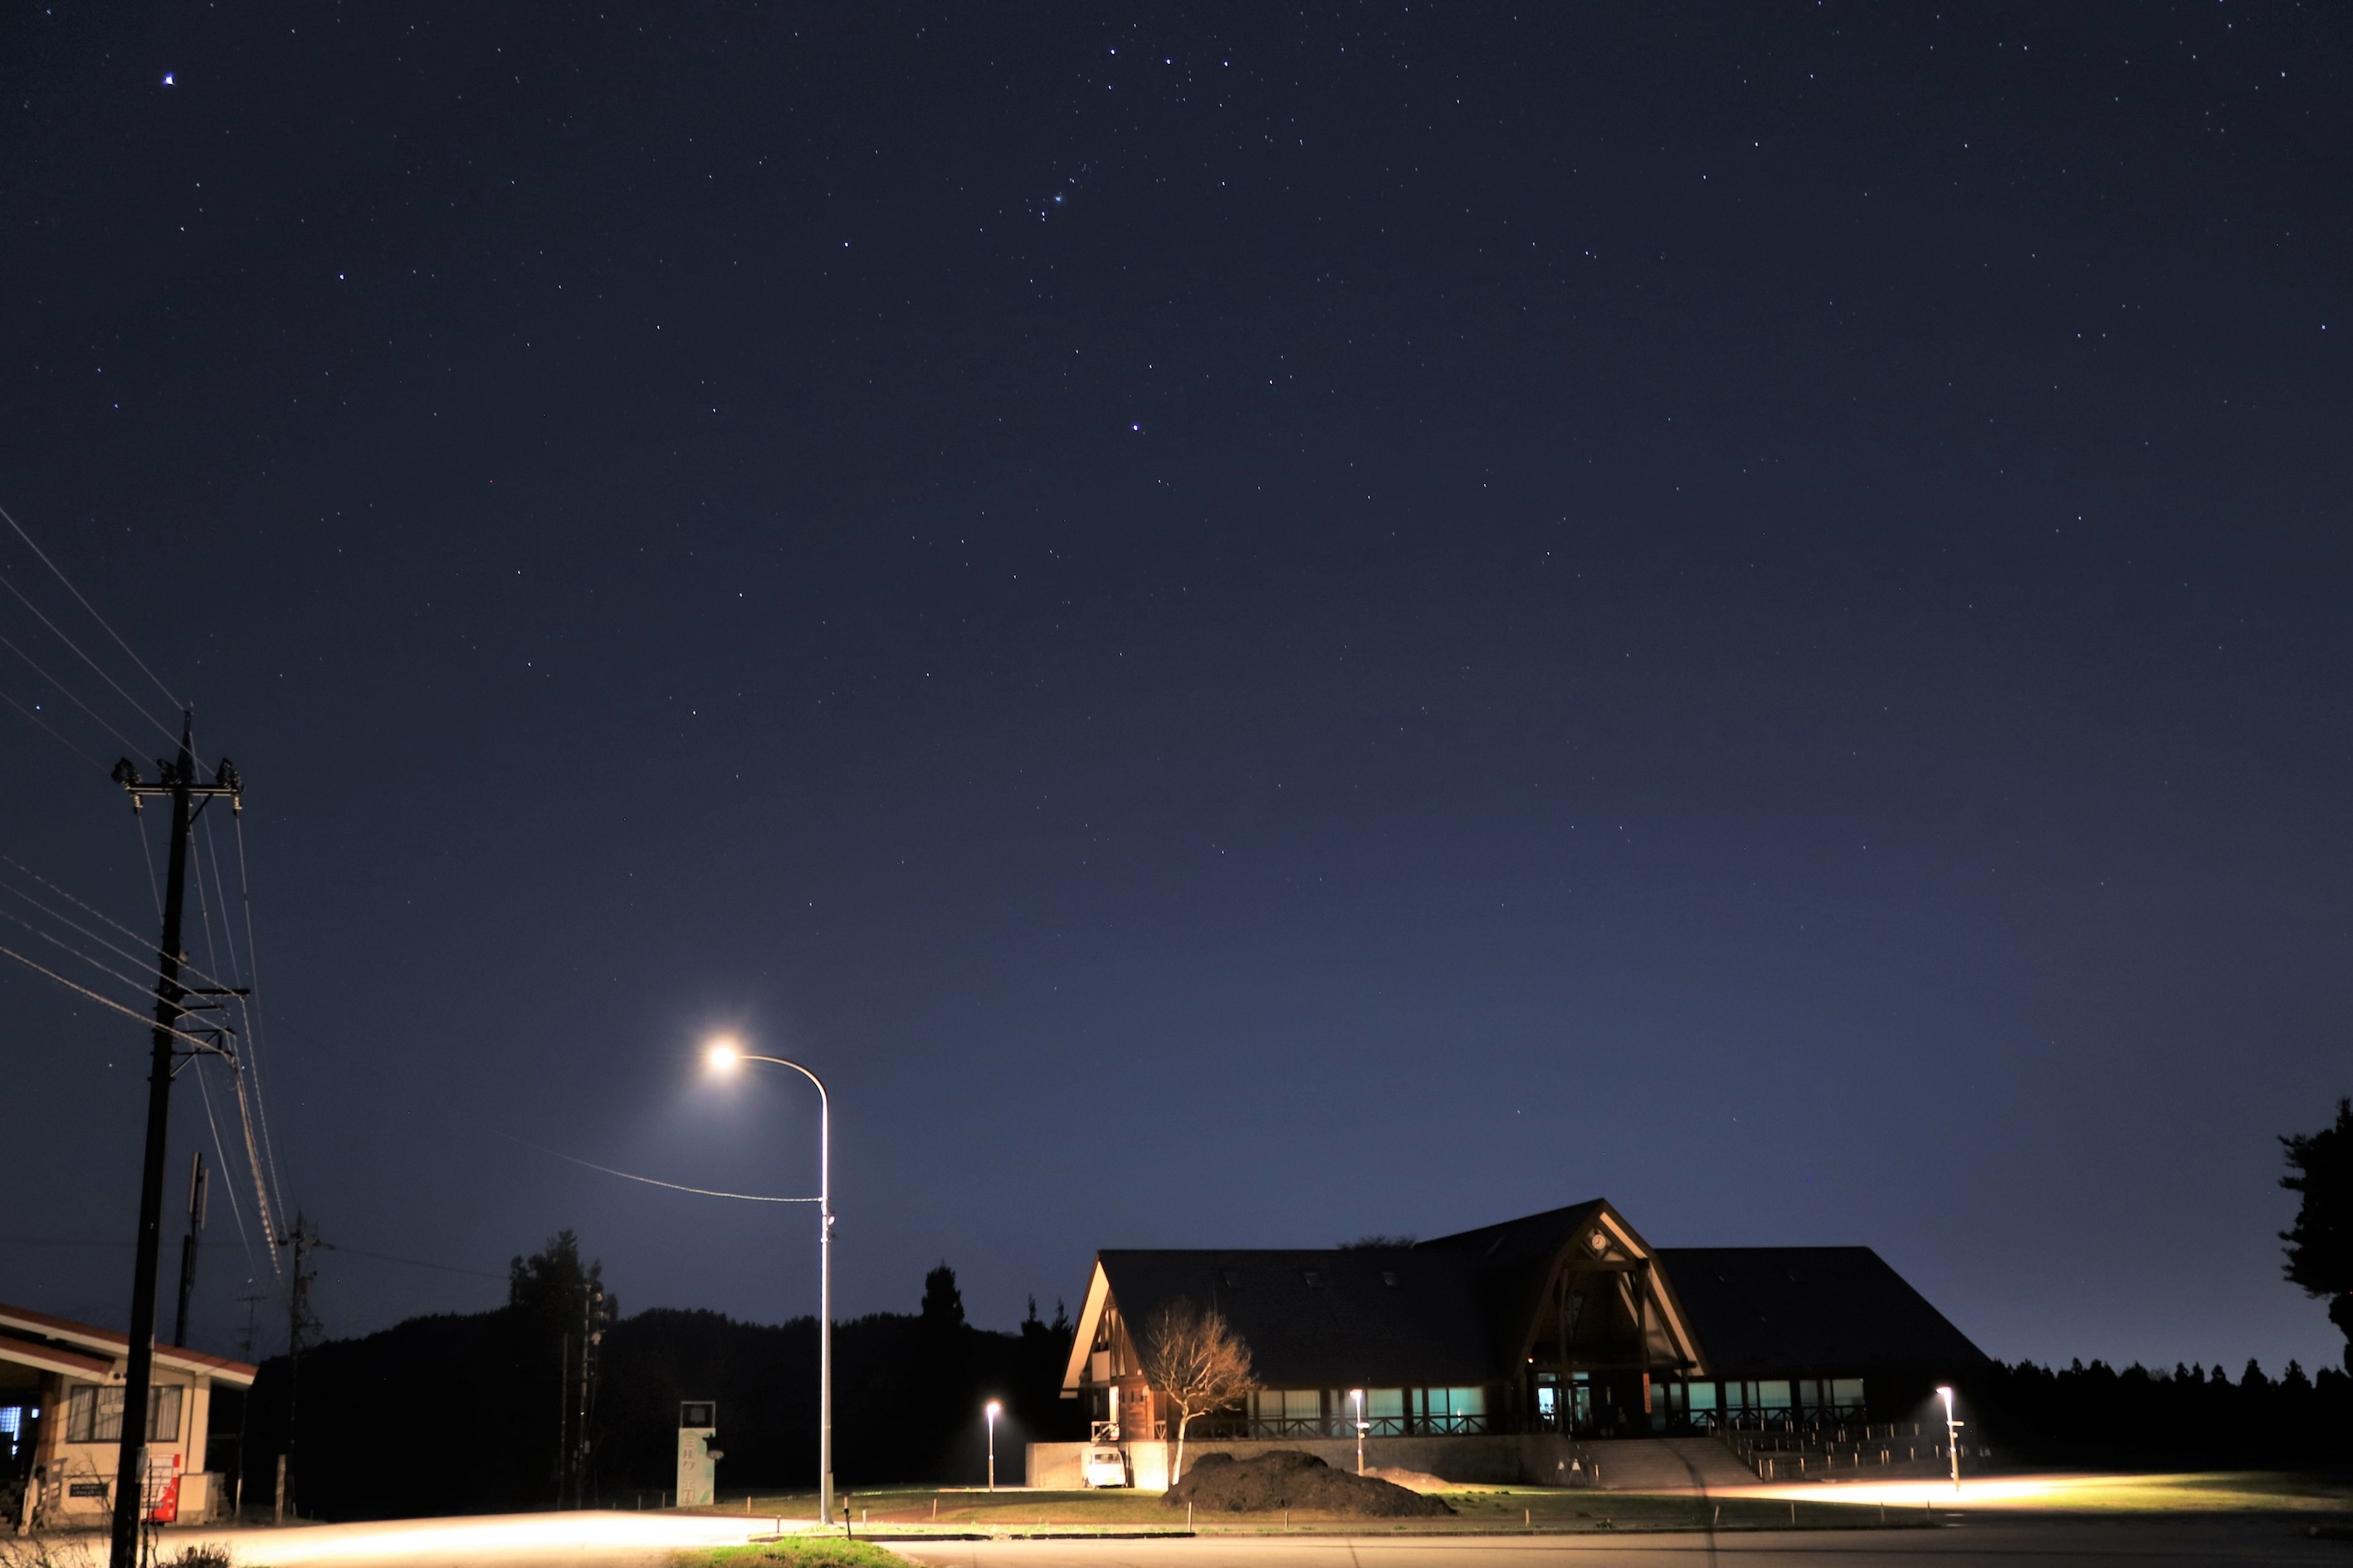 パナソニックのLED照明300台導入の福井県大野市、アジア初の星空保護区(R)アーバン・ナイトスカイプレイスに認定